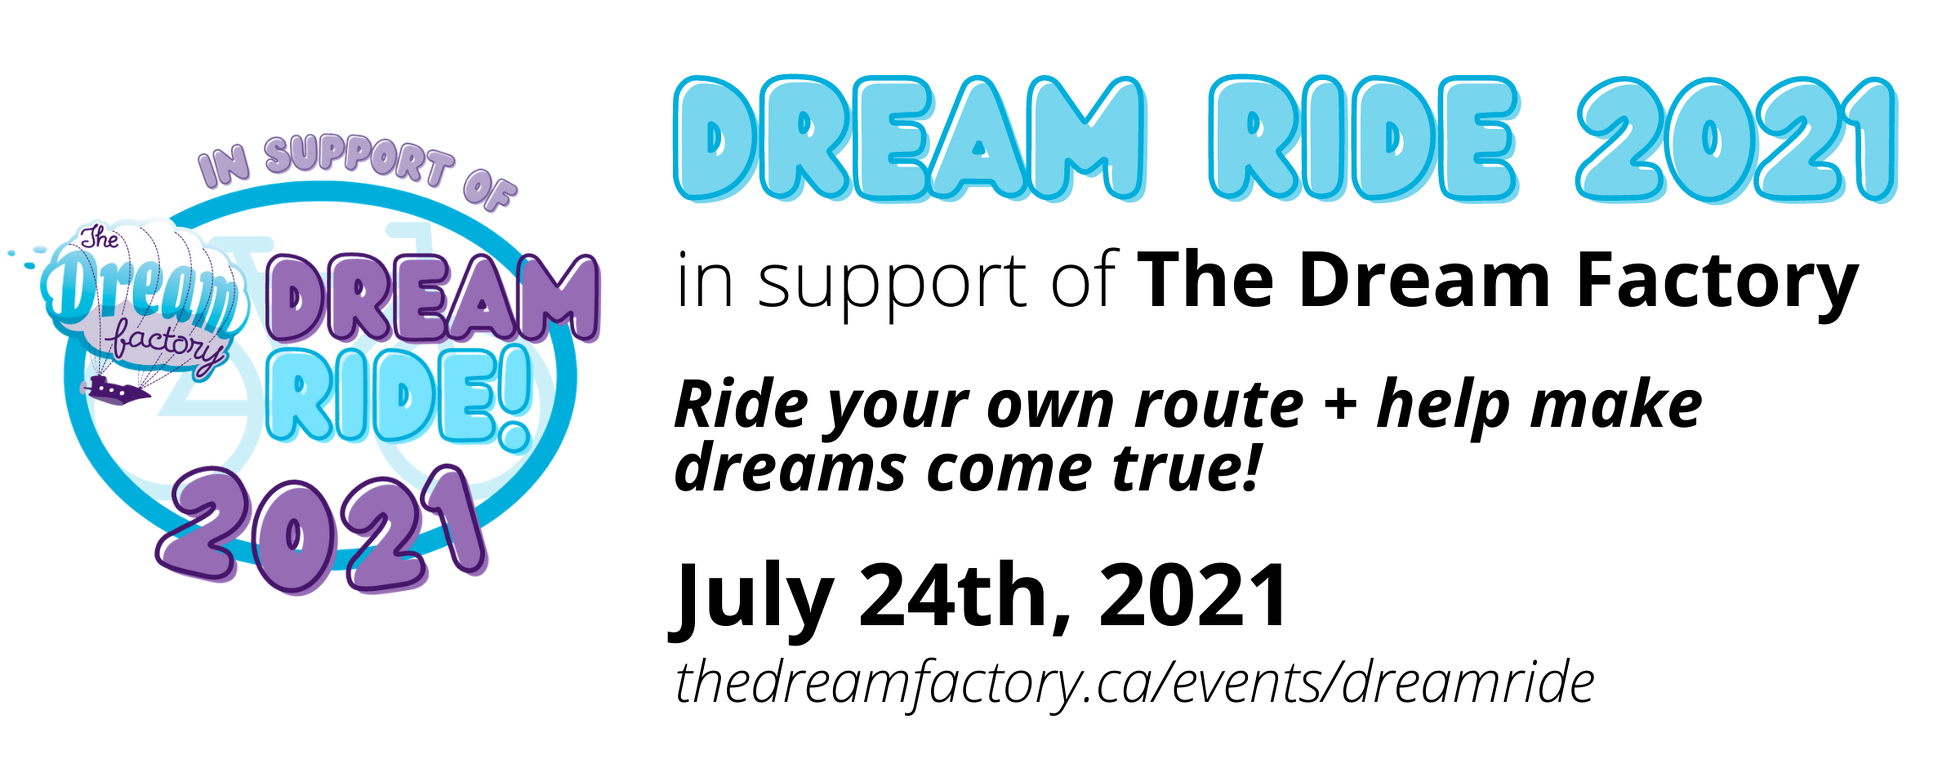 2021 Dream Ride